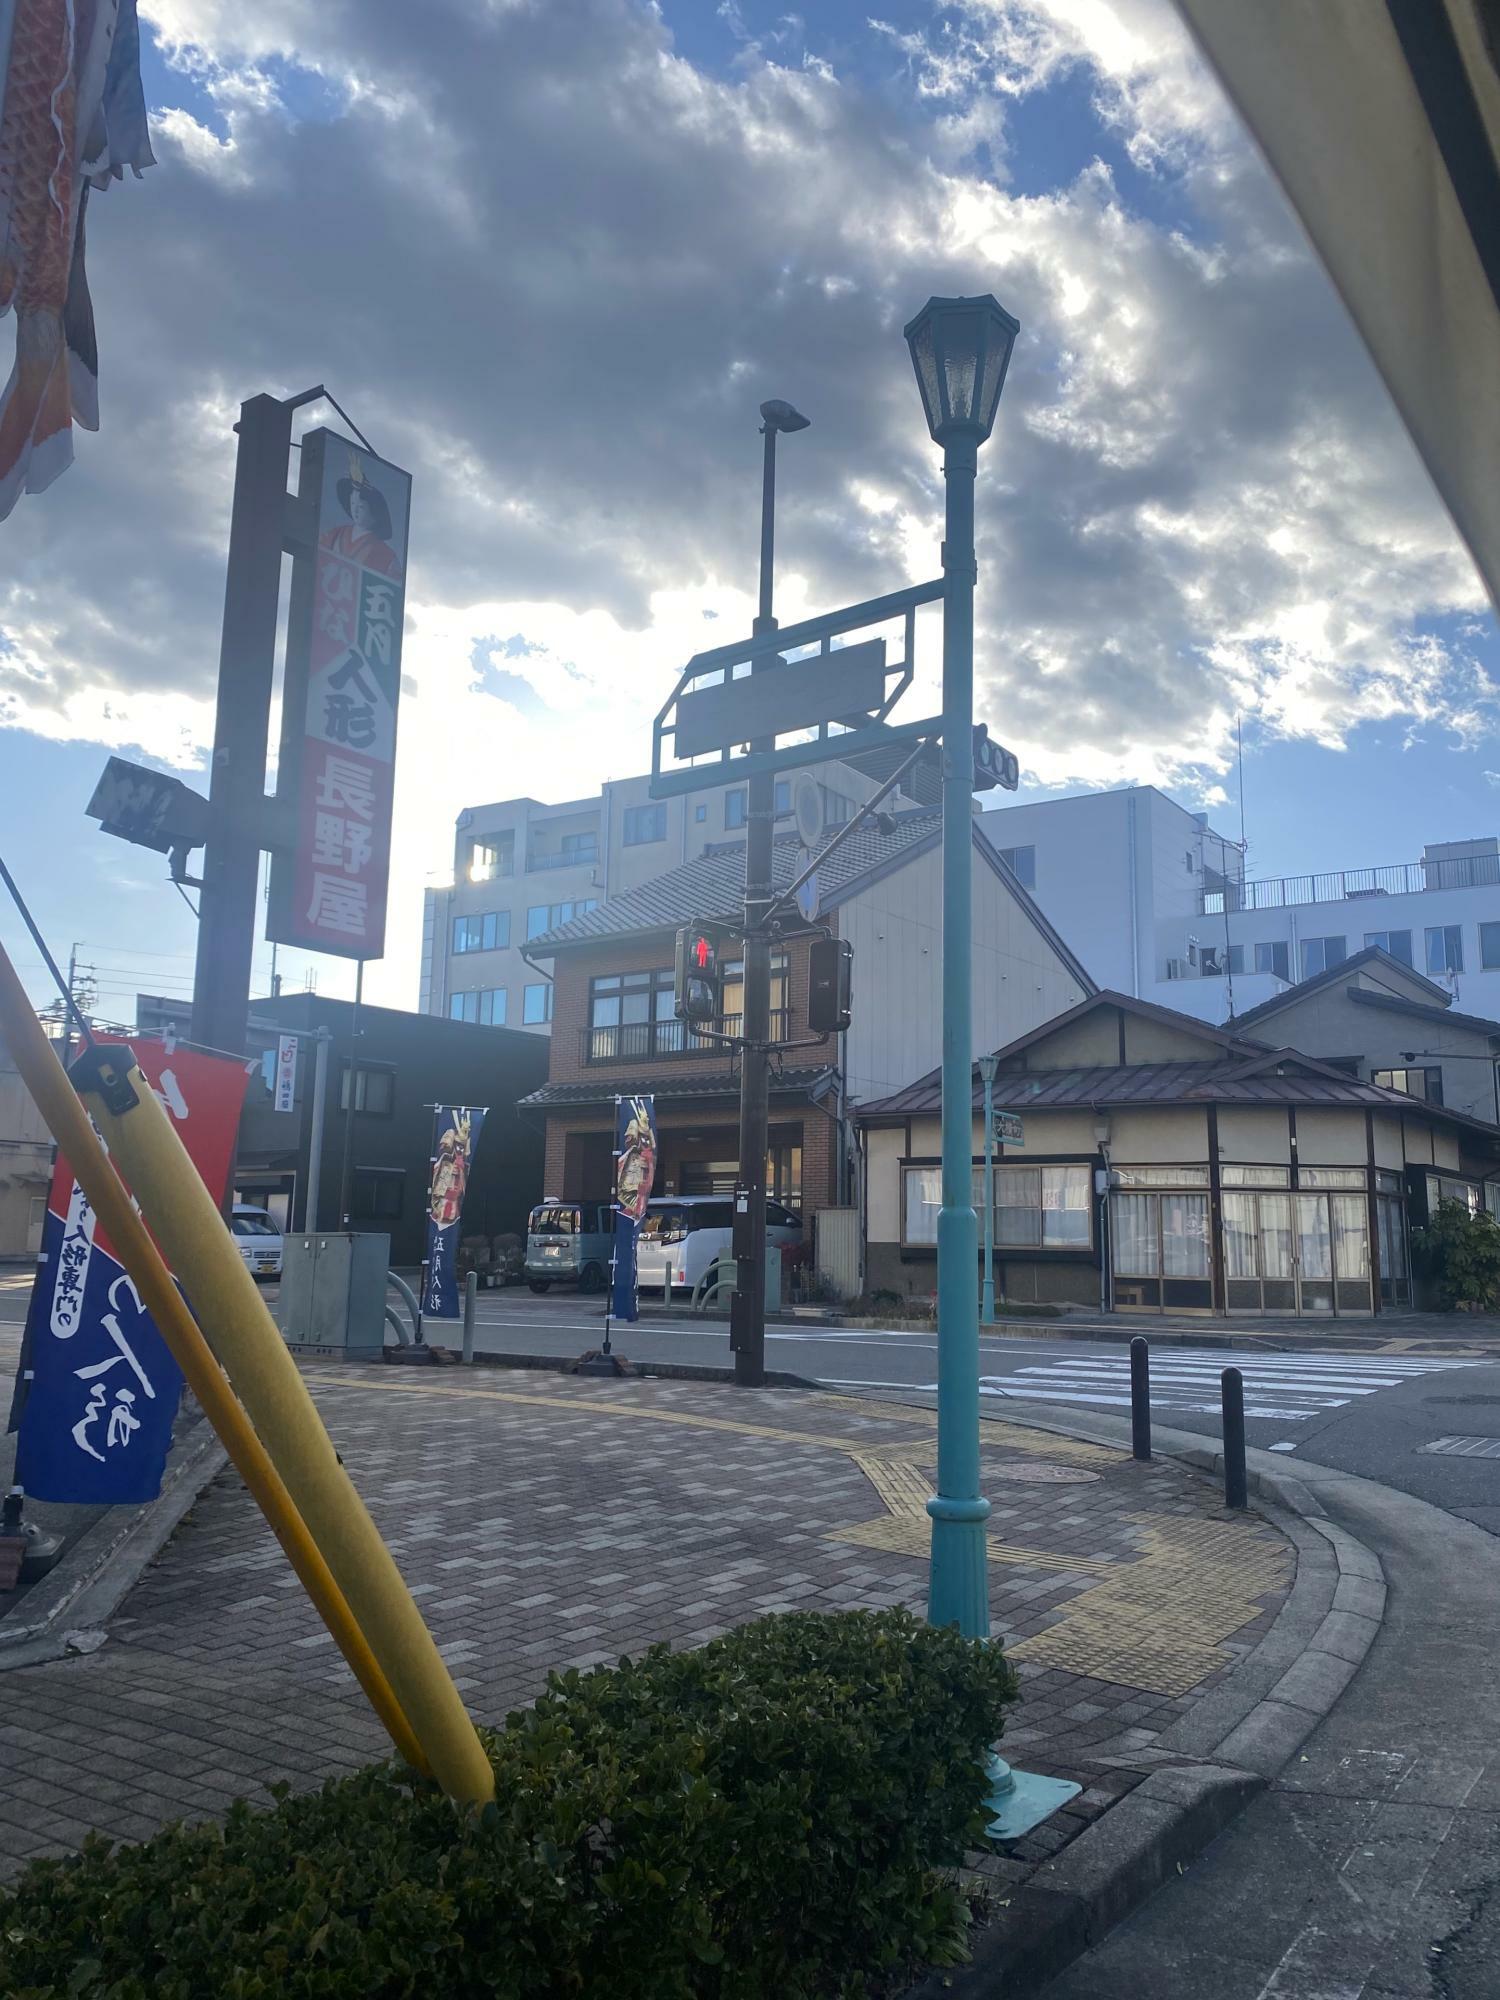 飯田市の街灯って、素敵なデザインが多い気がします